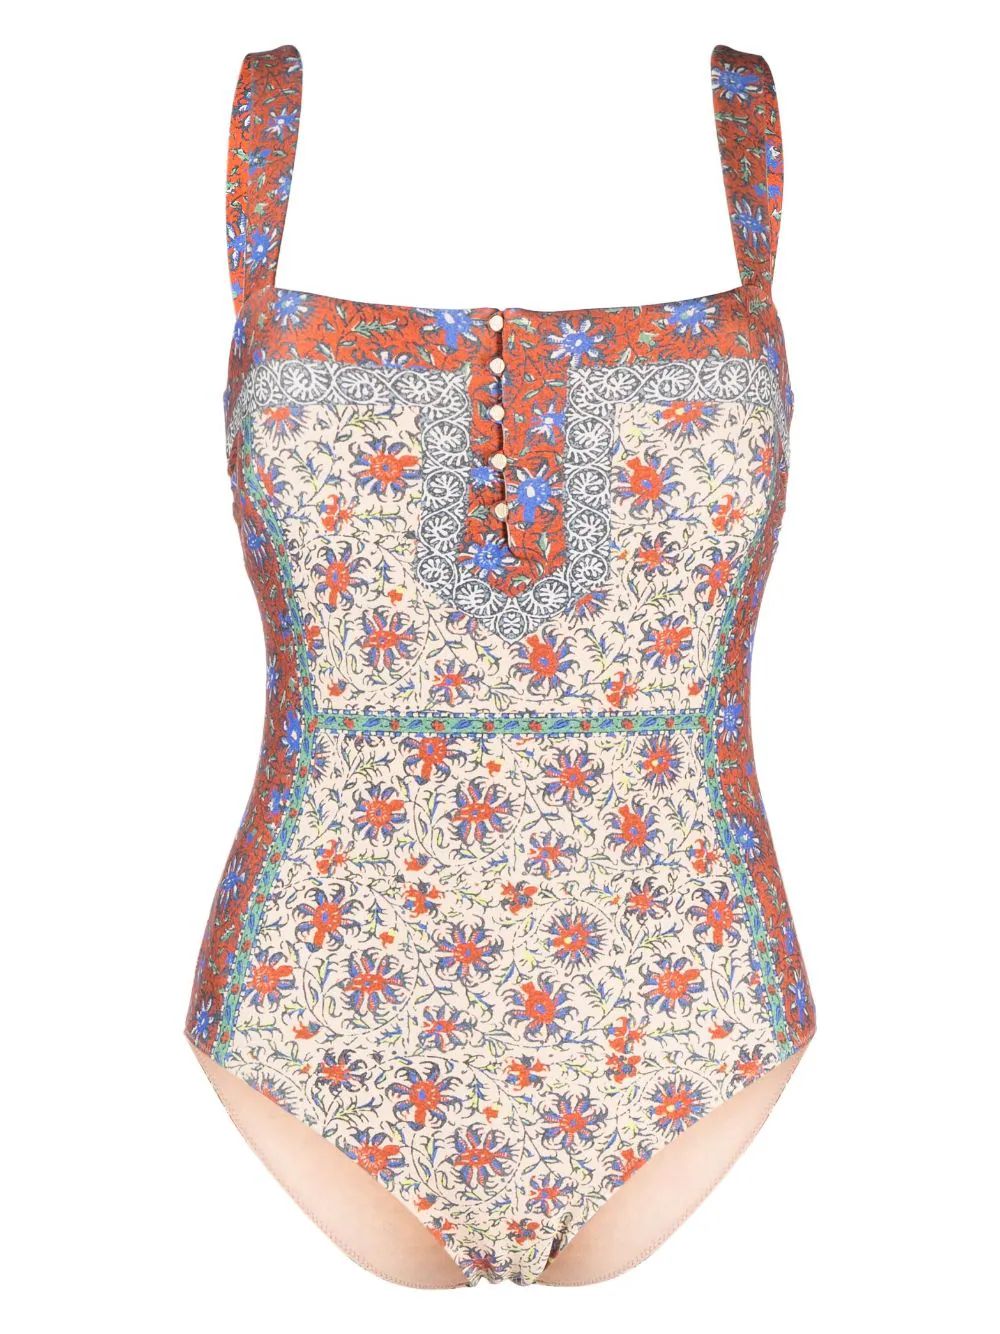 BOTEH Clementine Zoe one-piece Swimsuit - Farfetch | Farfetch Global